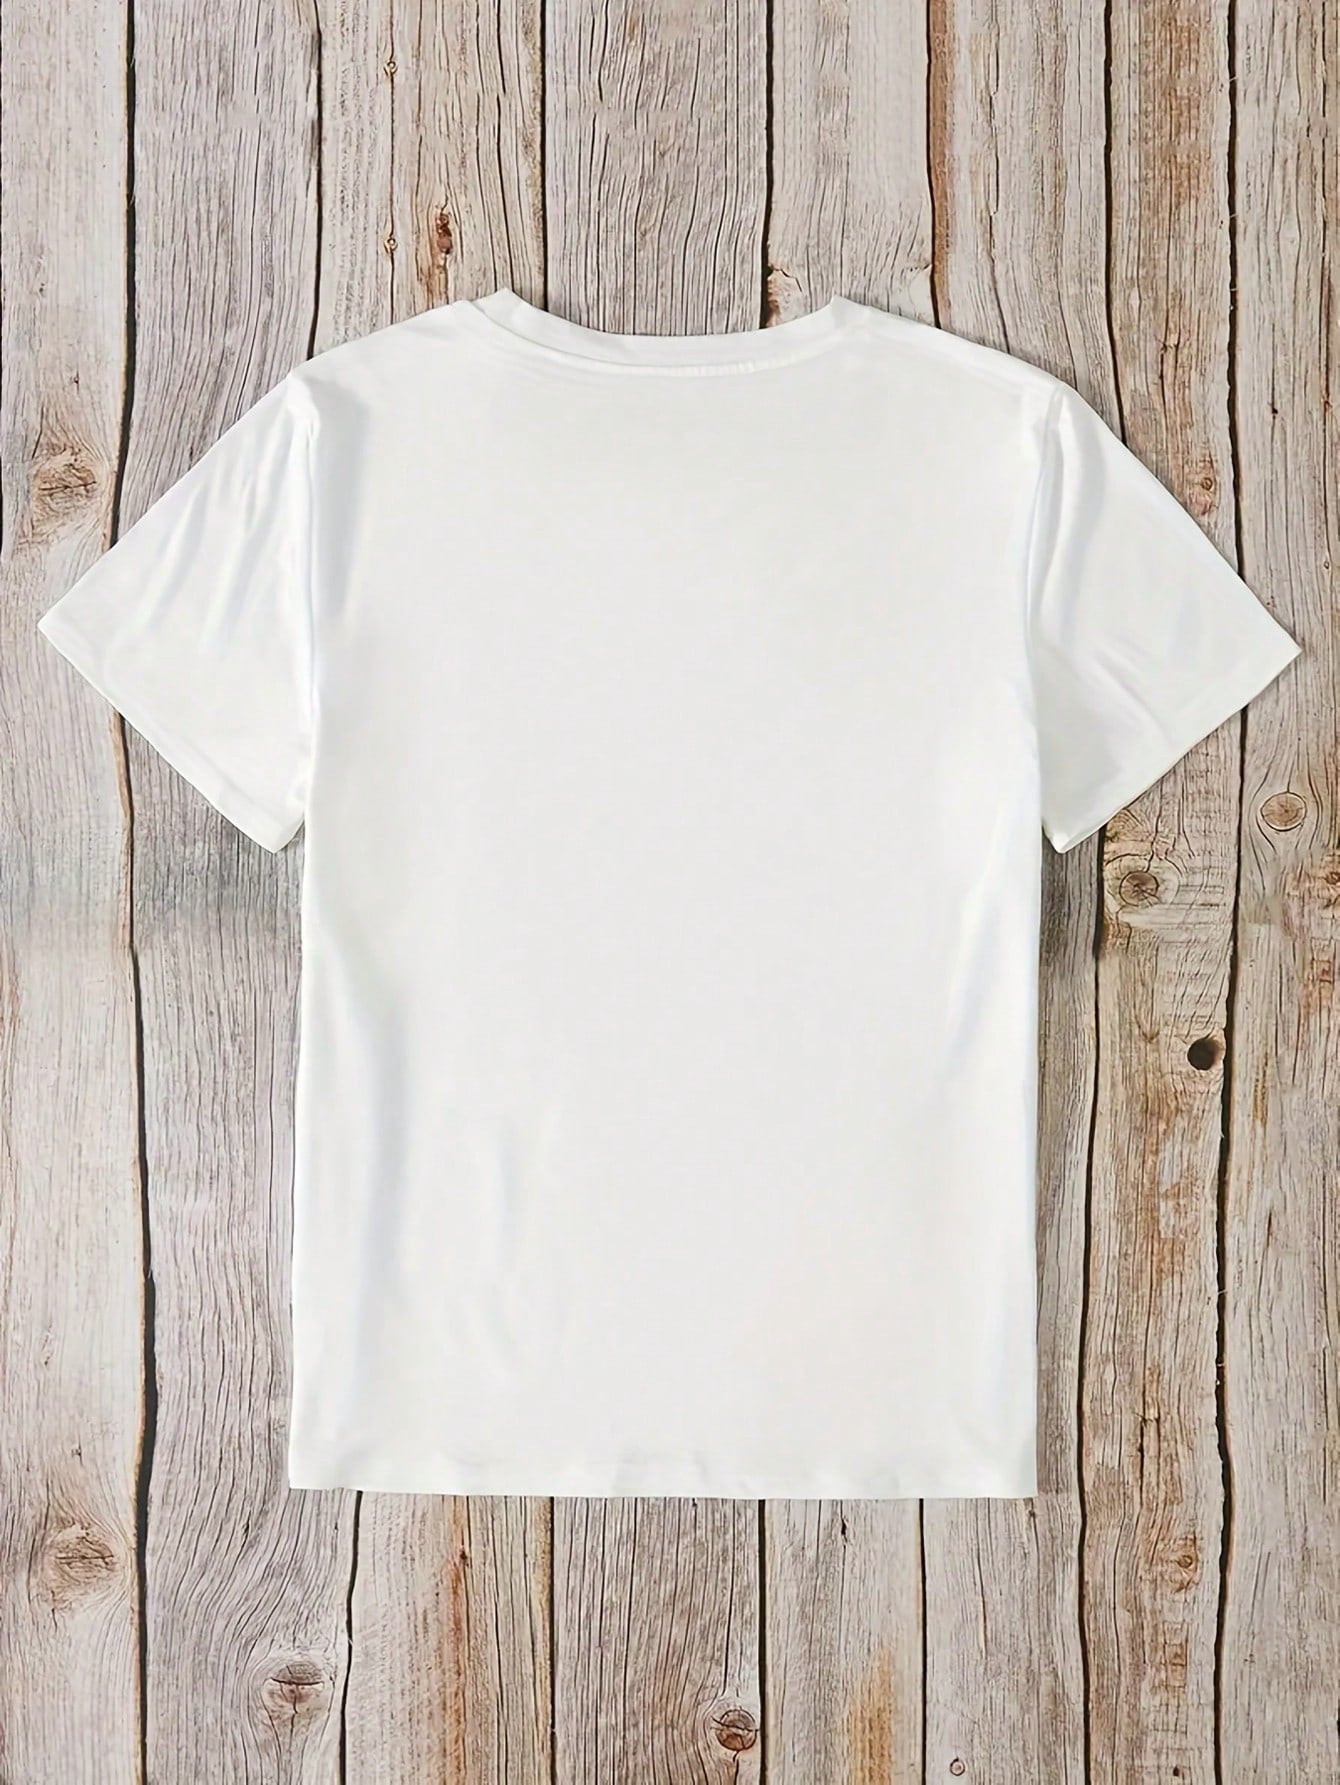 Women's Short Sleeve T-Shirt With Bear Print